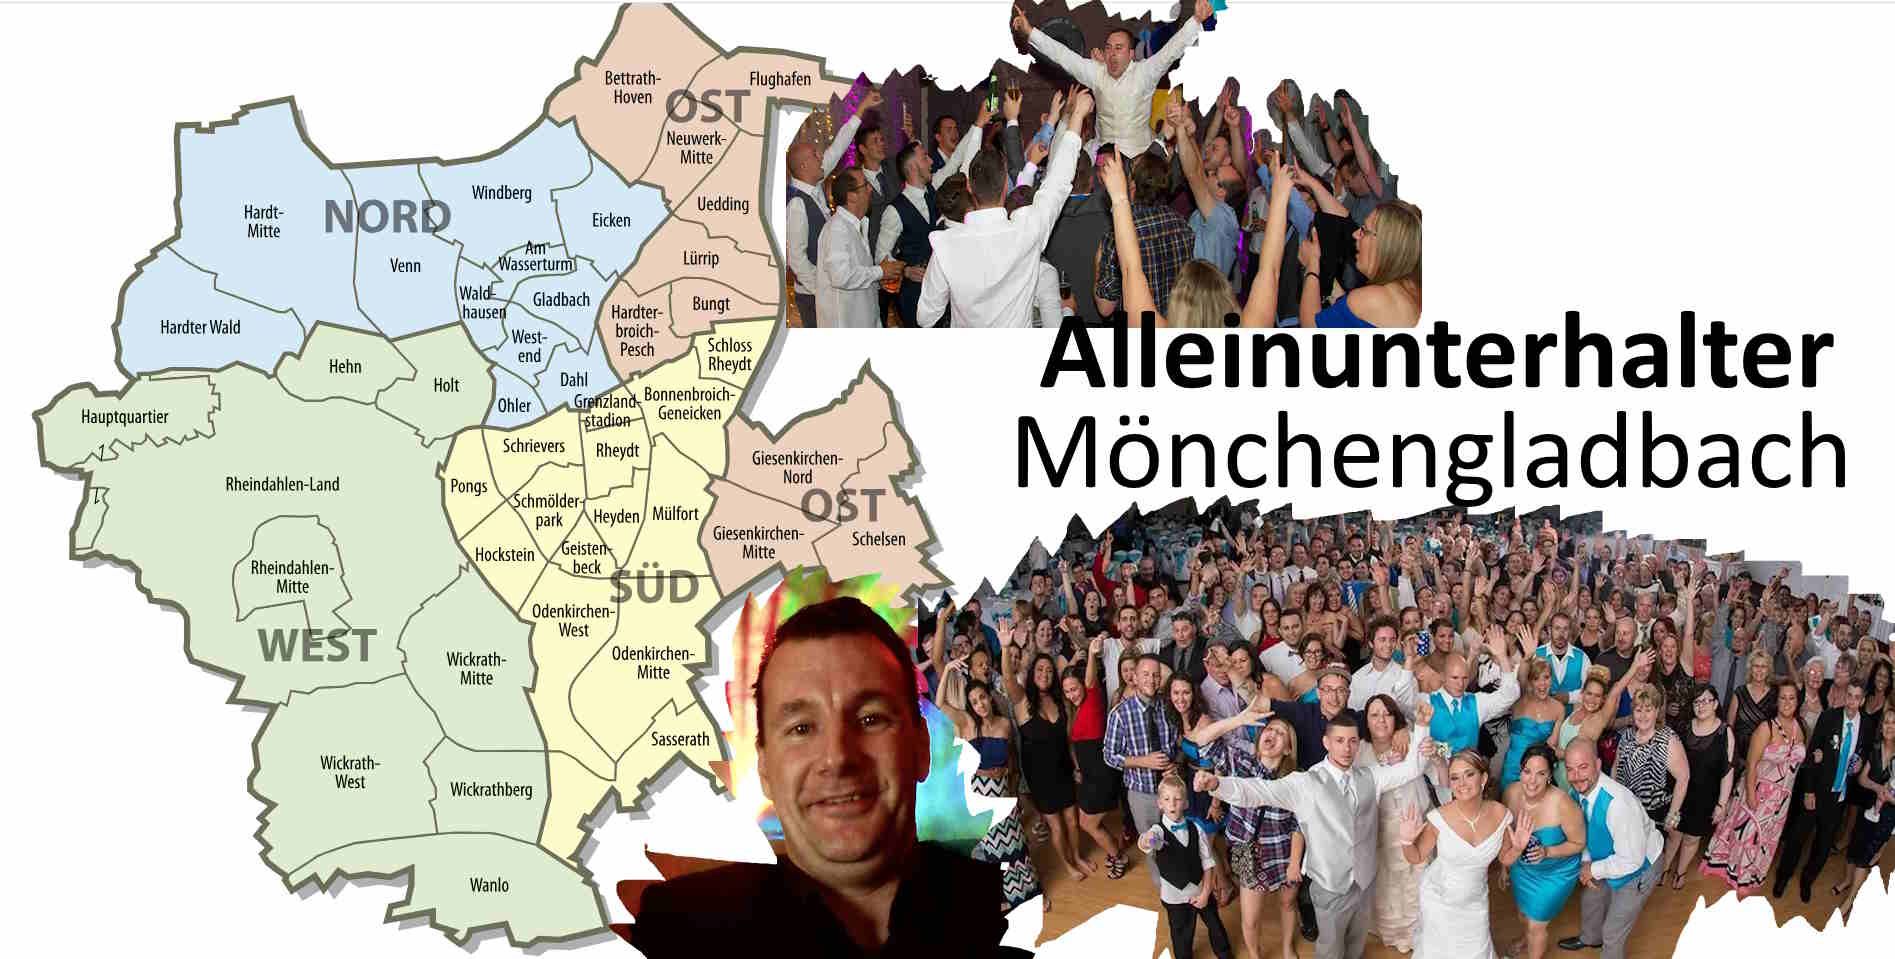 Alleinunterhalter Mönchengladbach und ebenfall auch DJ Mönchengladbach